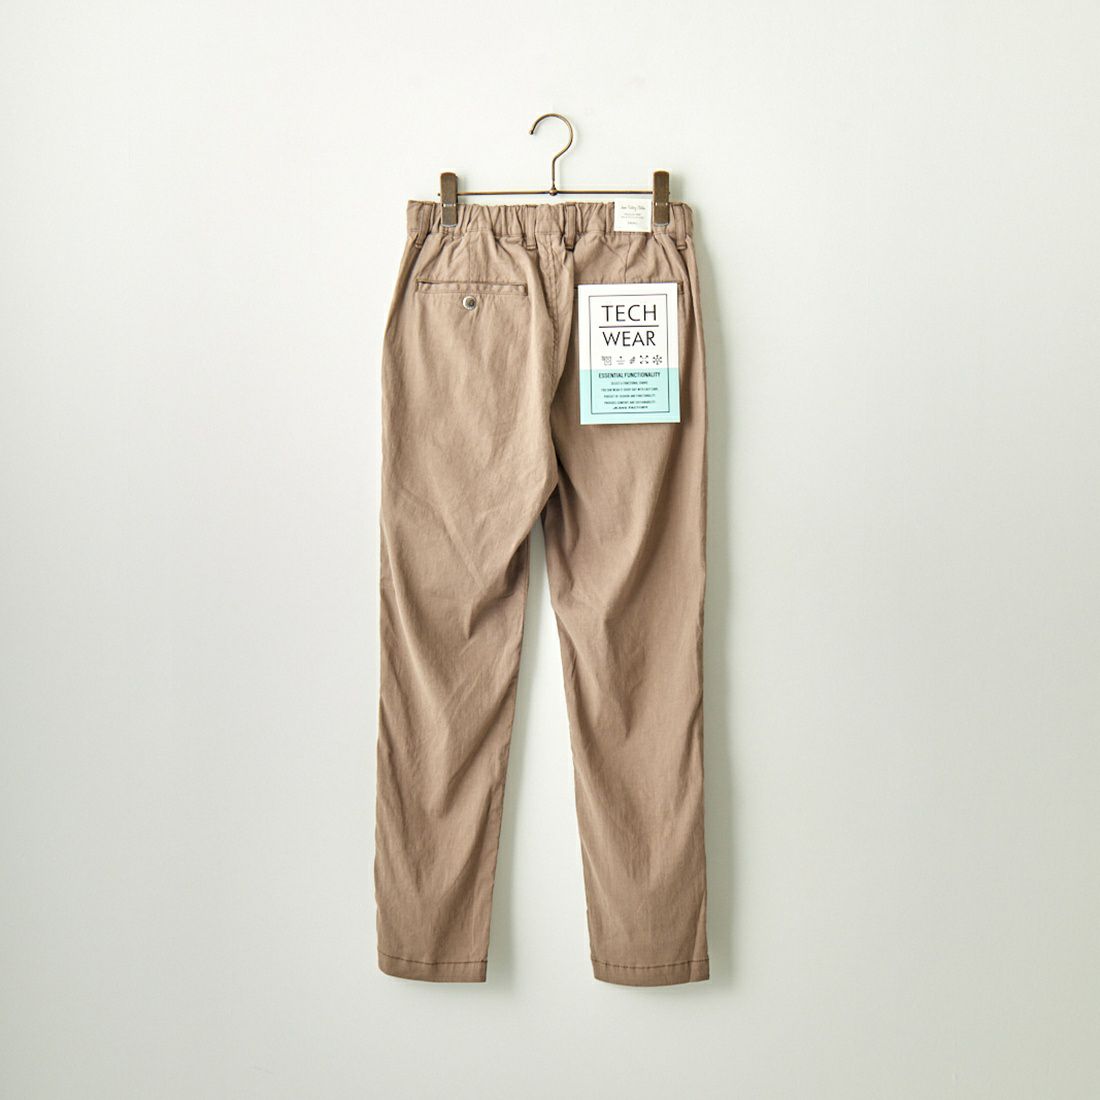 Jeans Factory Clothes [ジーンズファクトリークローズ] ハイブリットリネン1Pイージートラウザー [JFC-232-033] 67 BEG